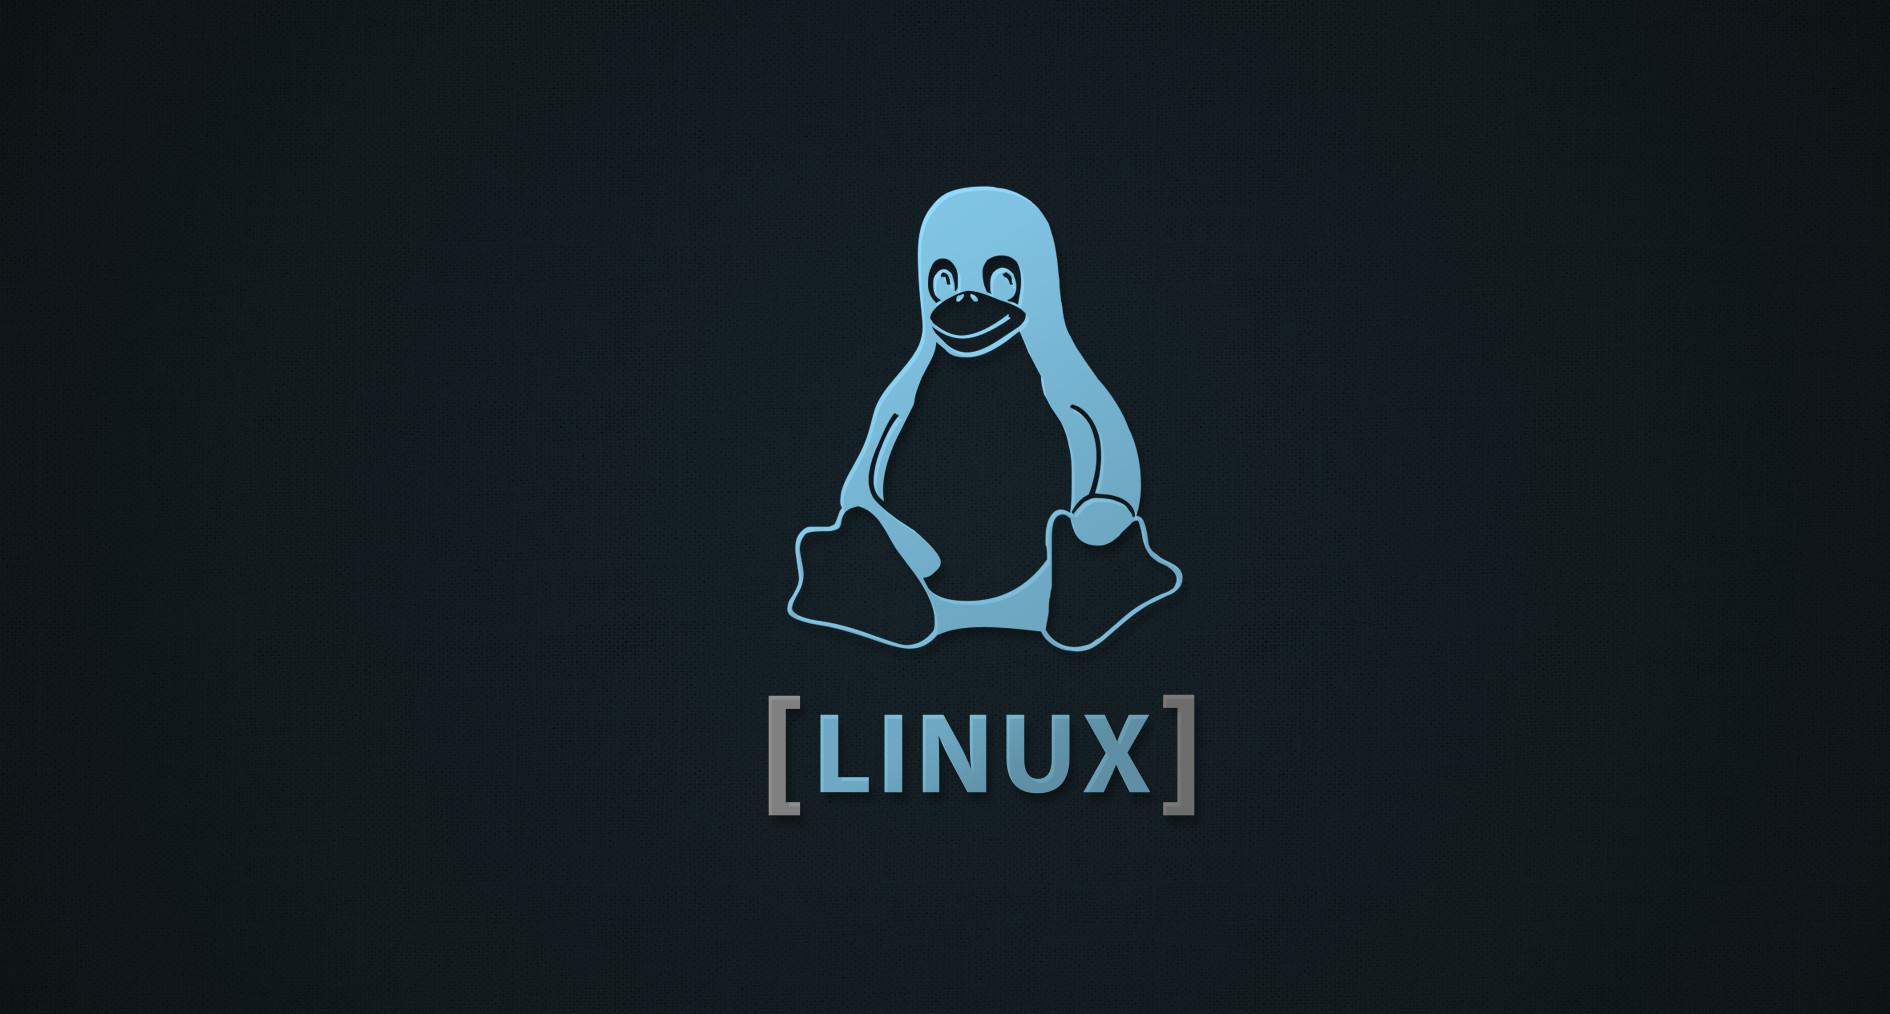 Amoled Linux